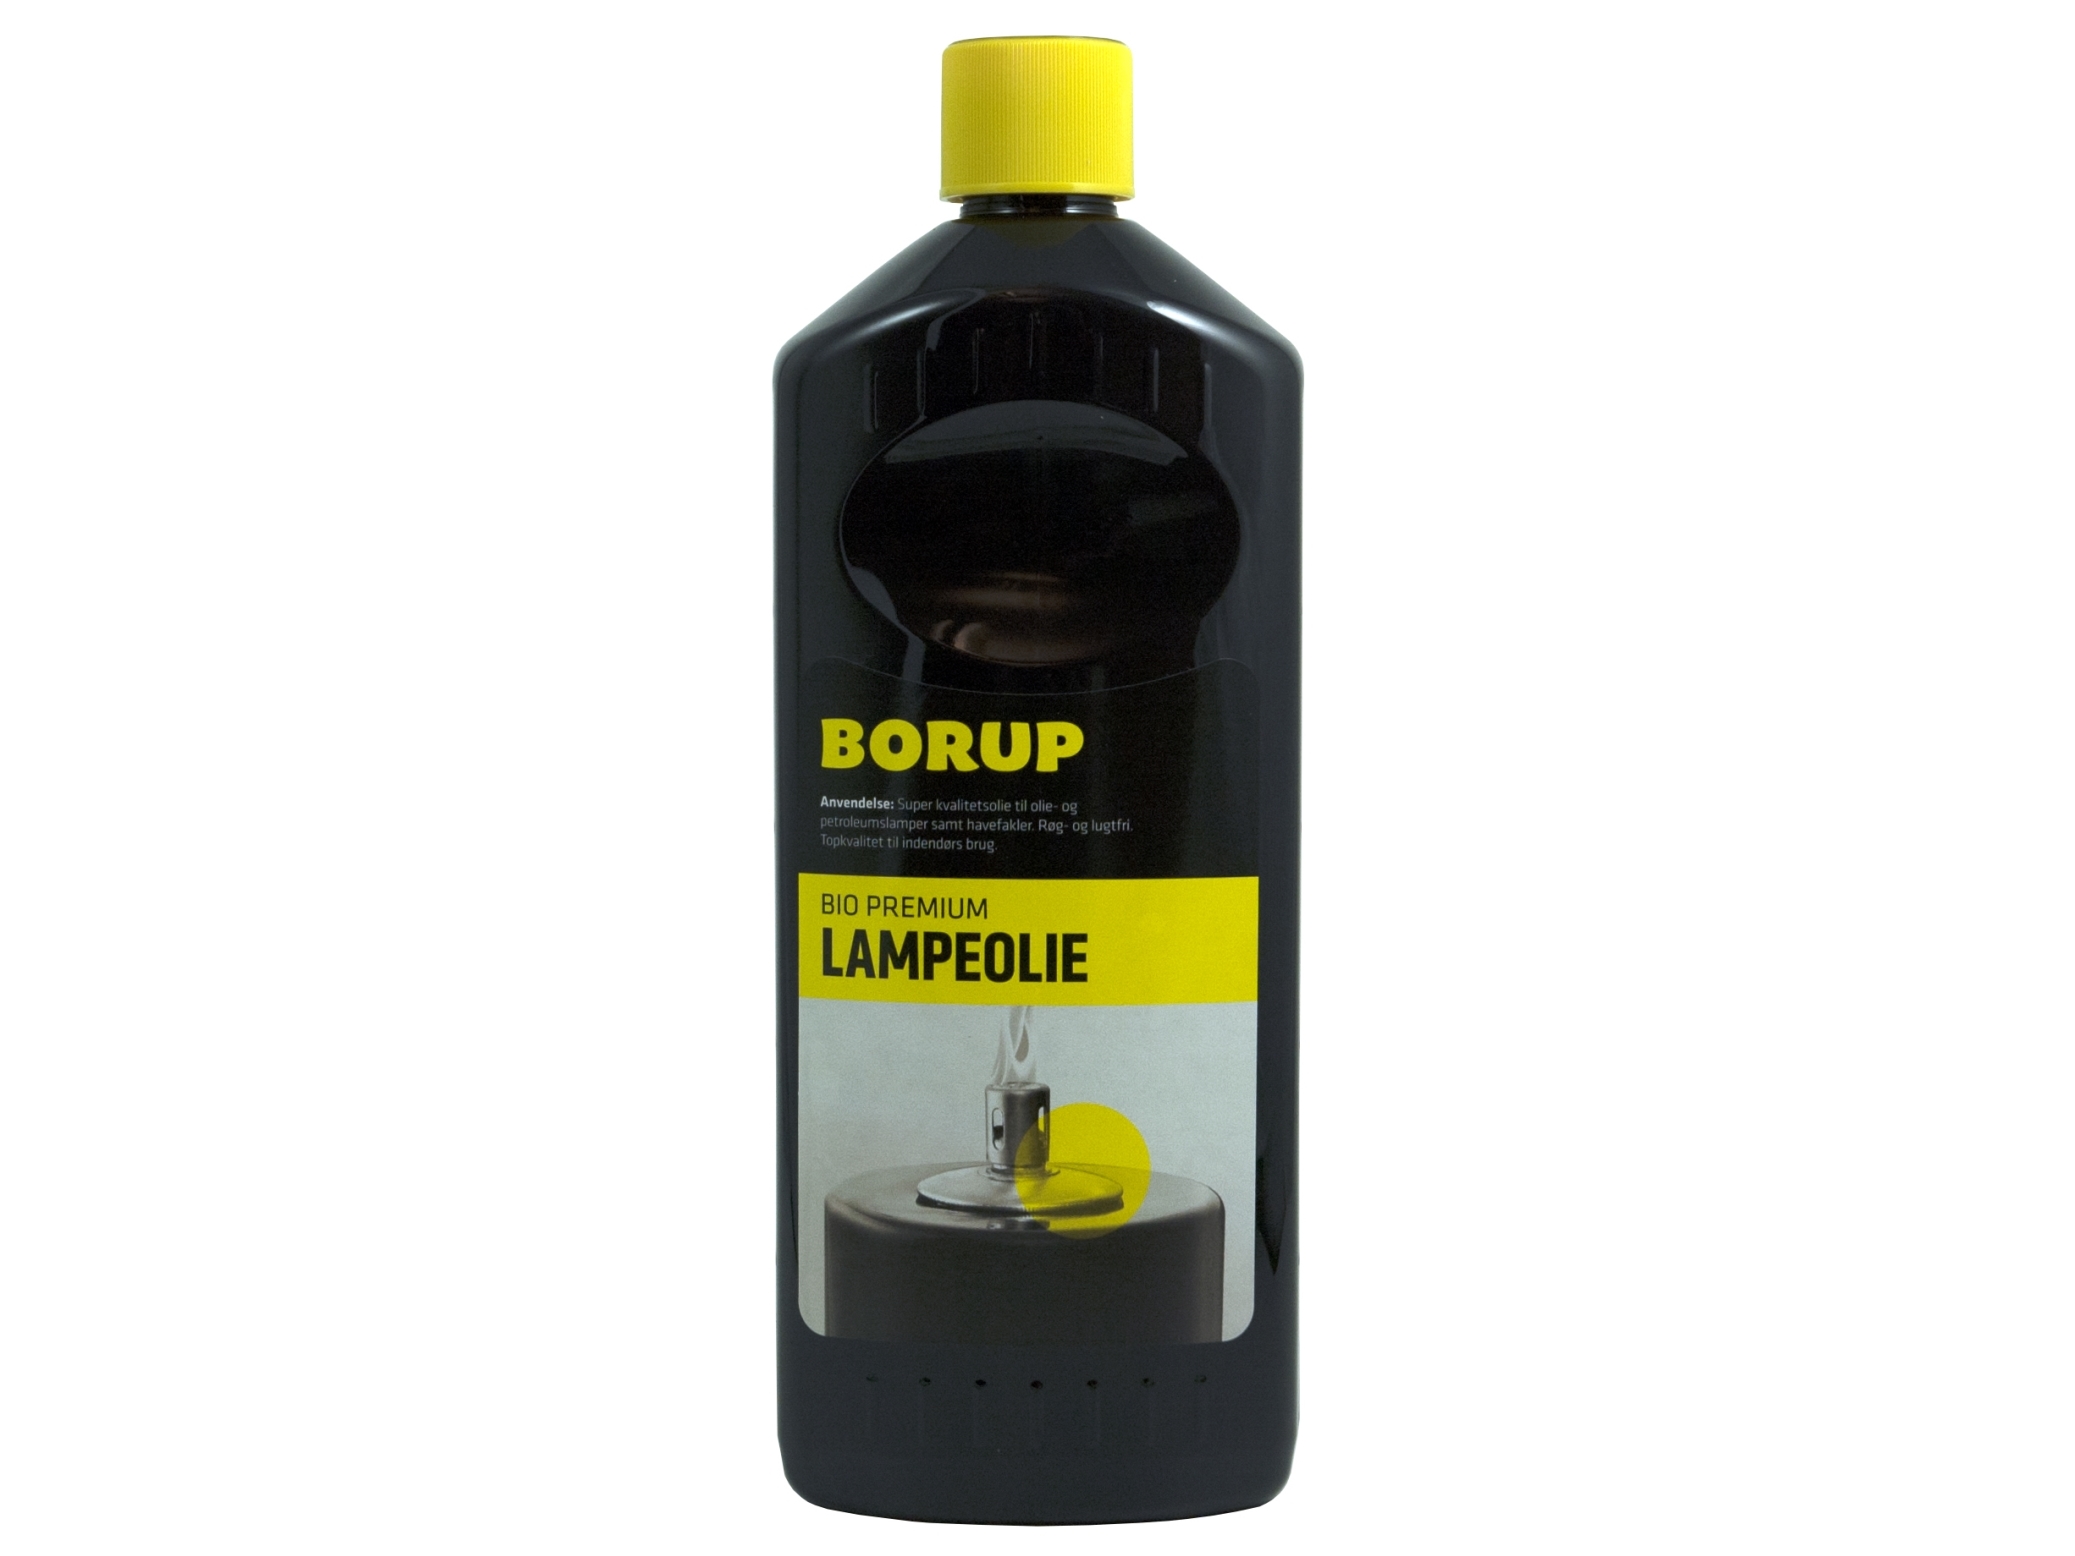 Billede af Lampeolie Bio Premium Borup Lugtsvag Højkvalitetsolie Indendørs Brug 1 Ltr,1 Ltr/Fl hos Computersalg.dk